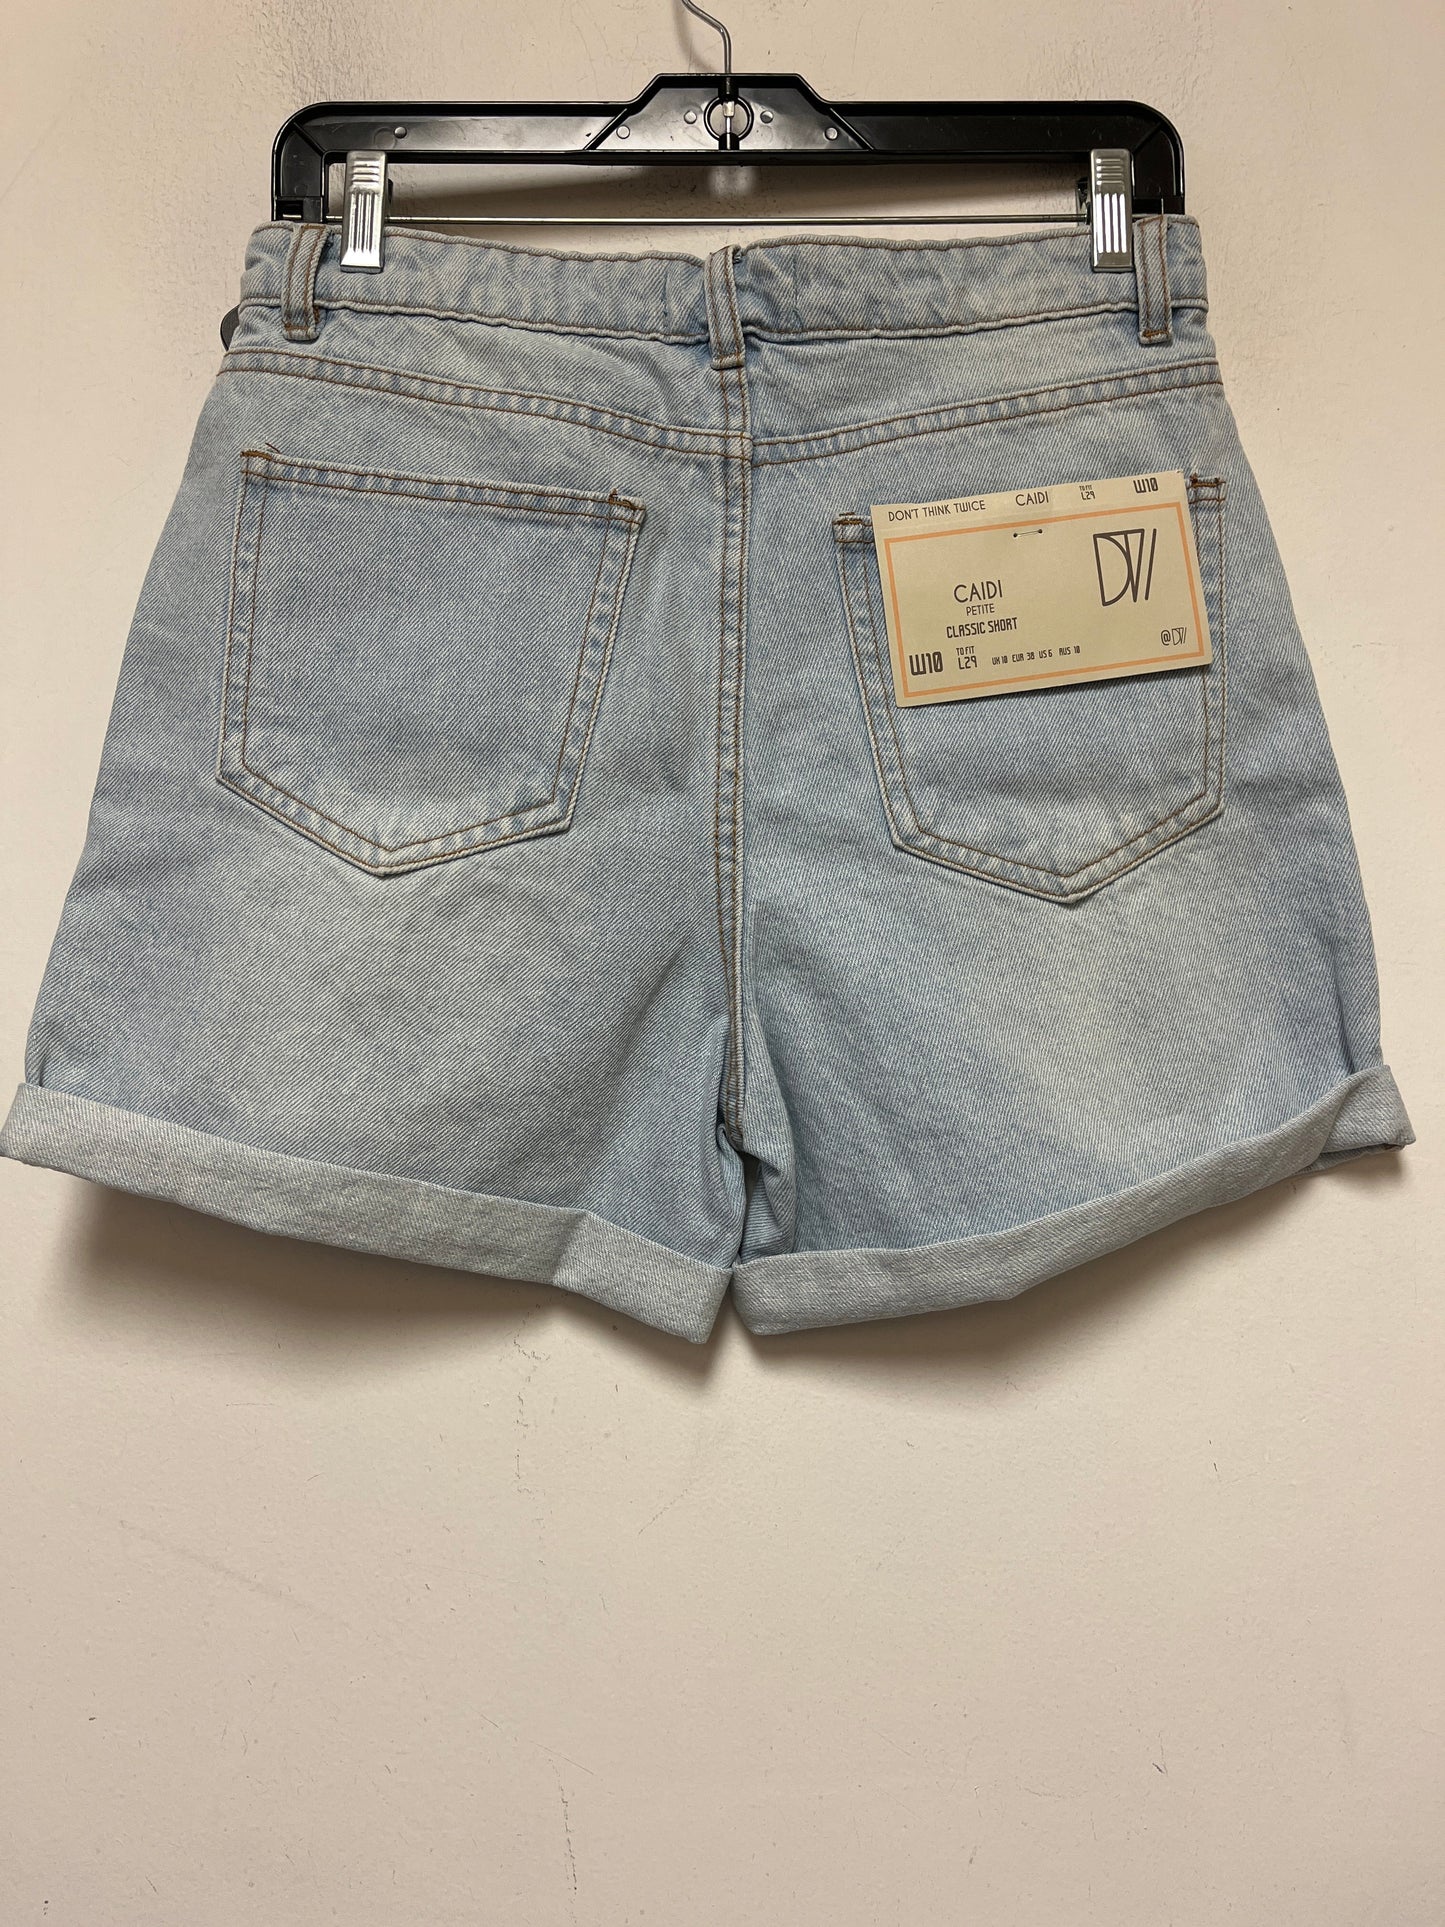 Blue Denim Shorts Clothes Mentor, Size 6